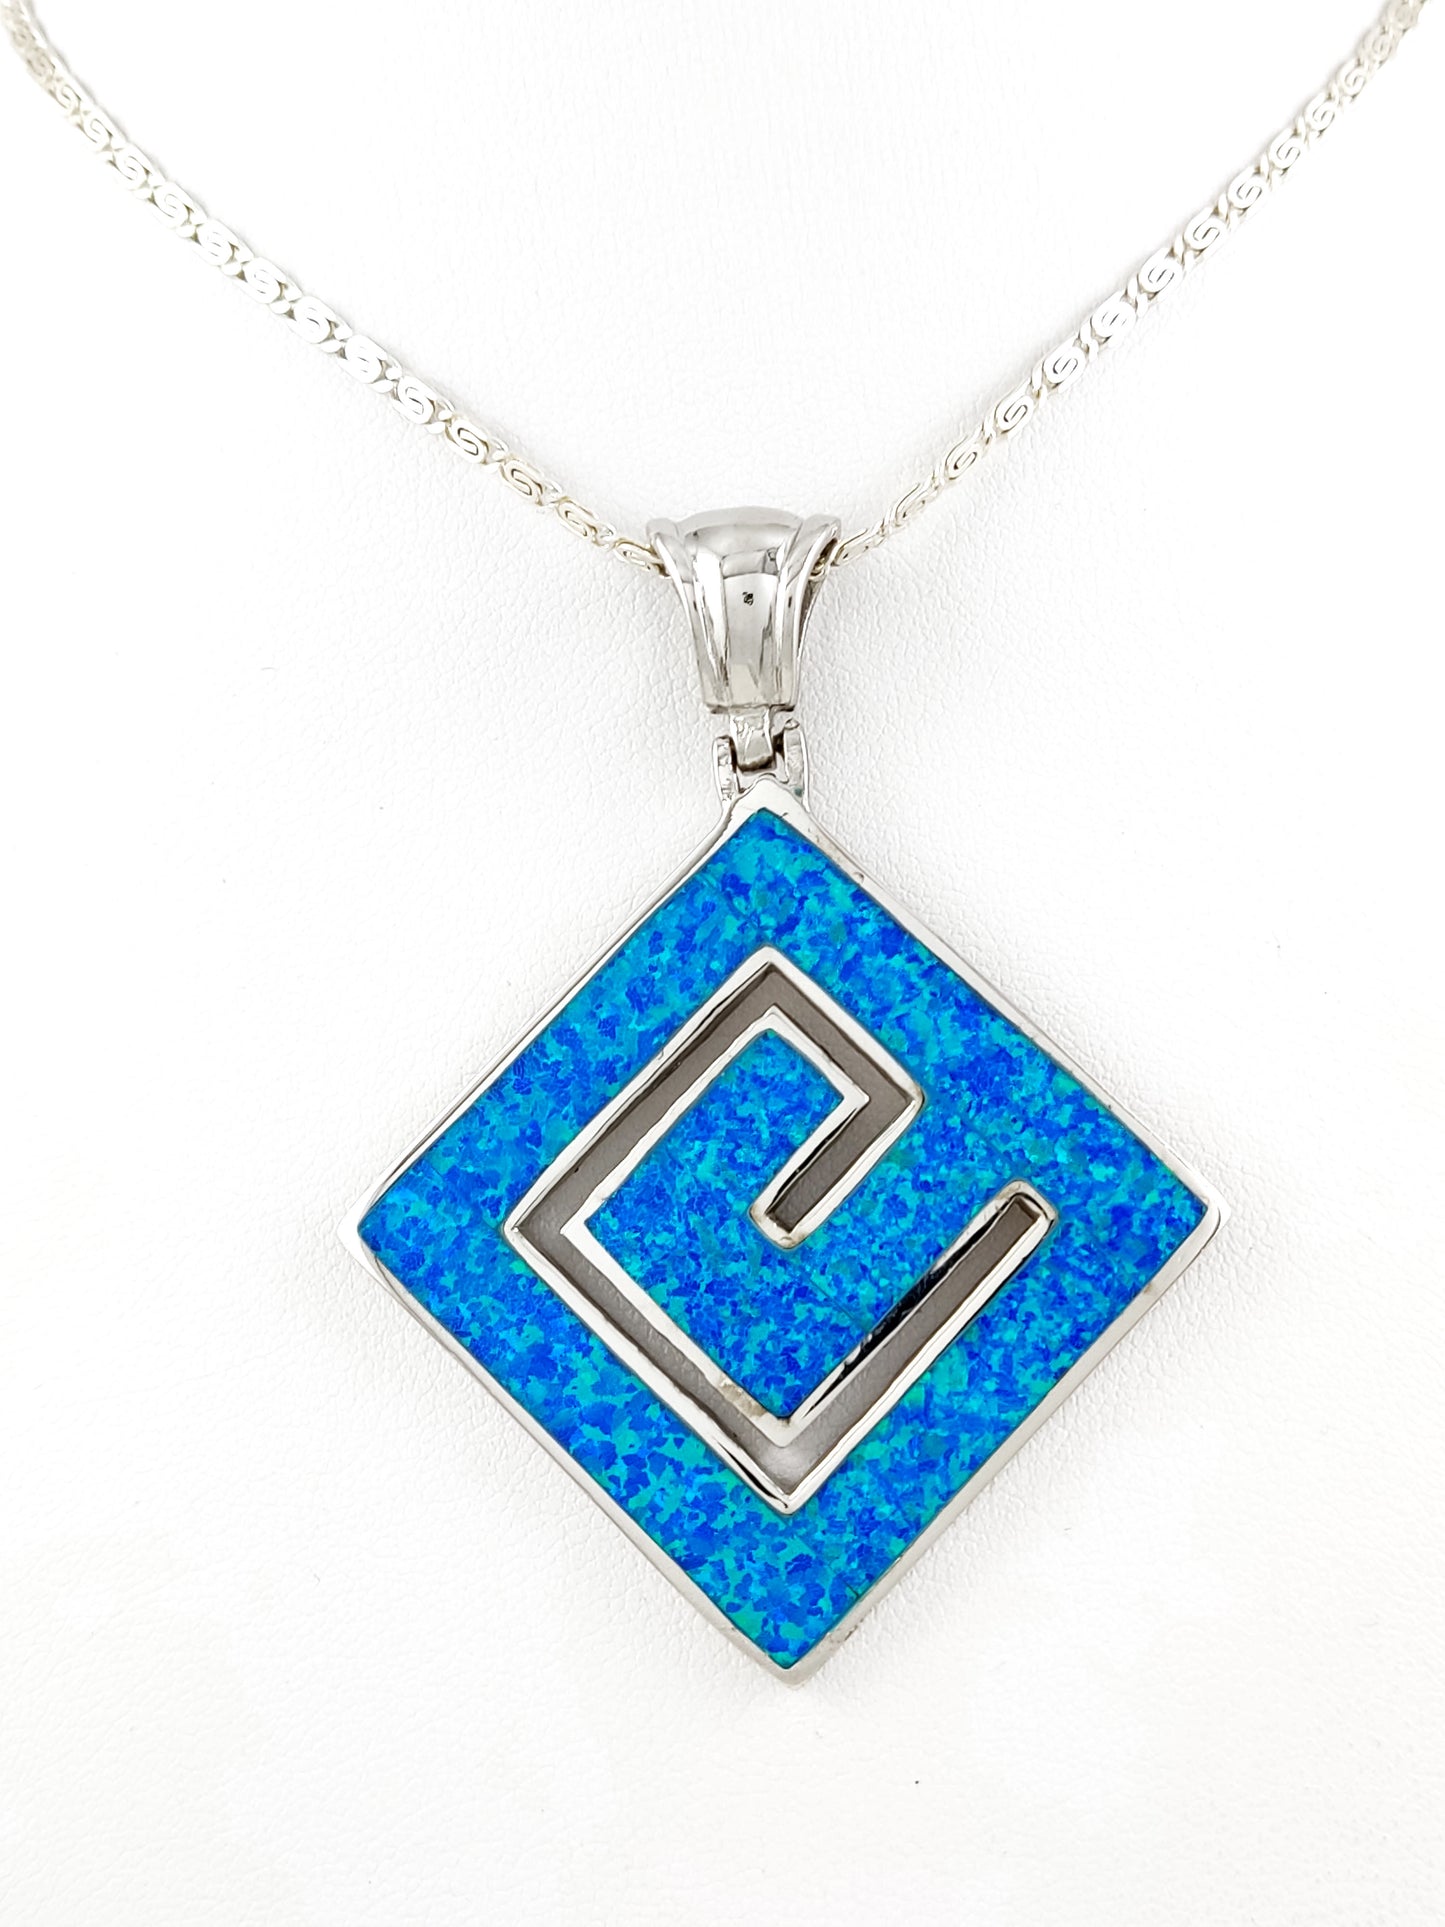 Griechischer Schlüssel-Halskette mit blauem Opal, großem quadratischem Silberanhänger 